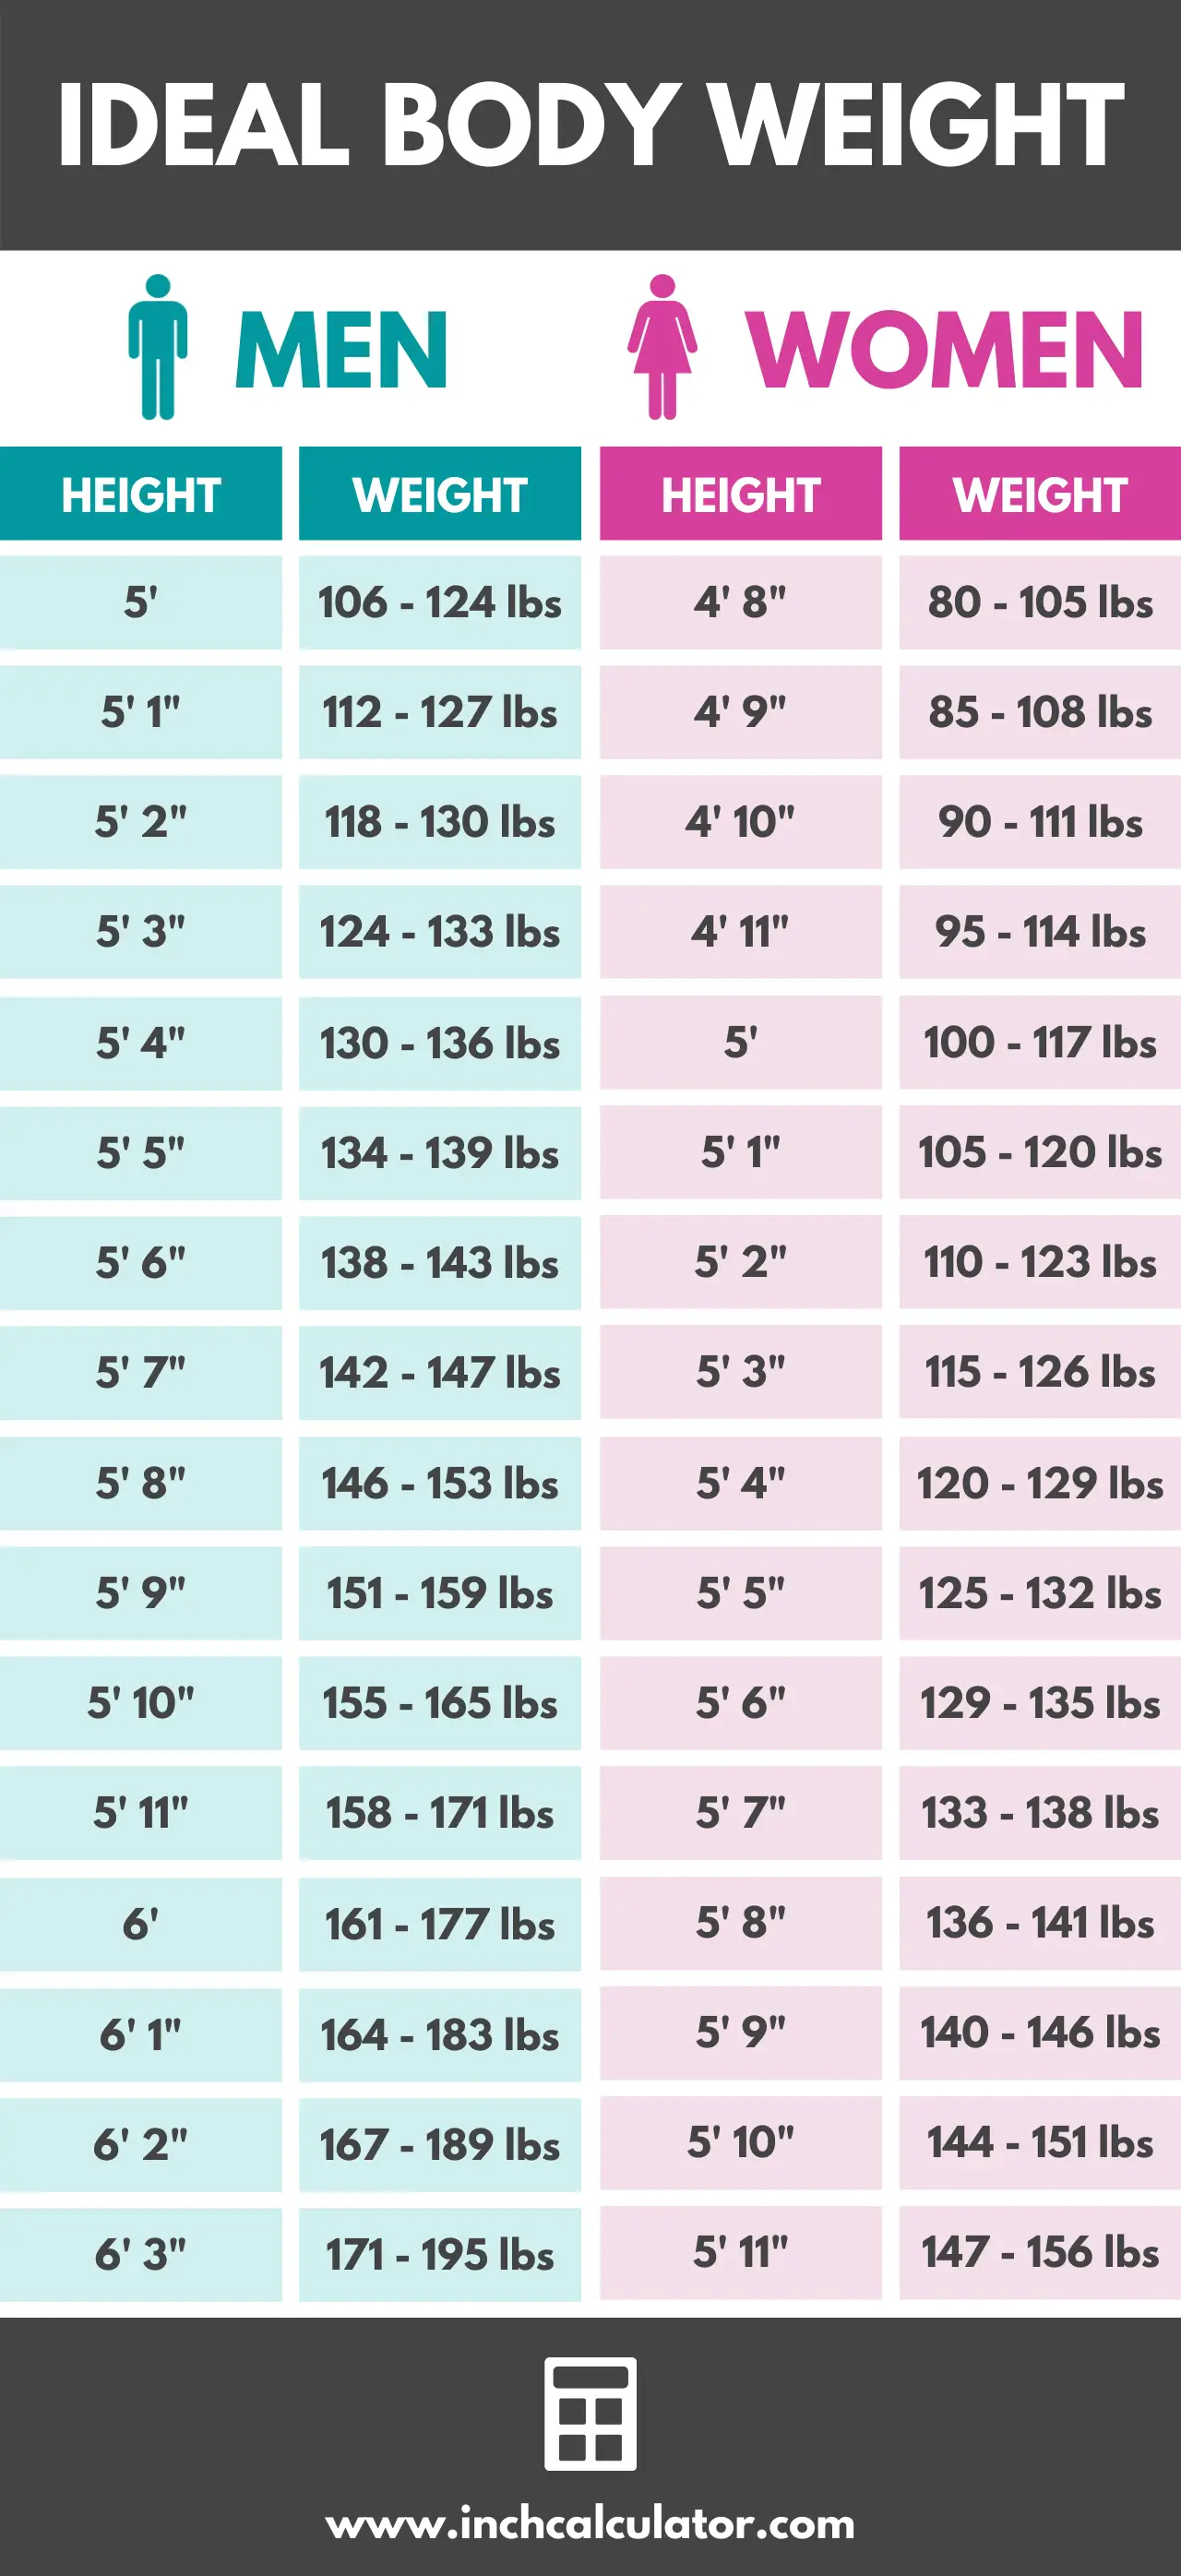 Tablas de relación de altura y peso